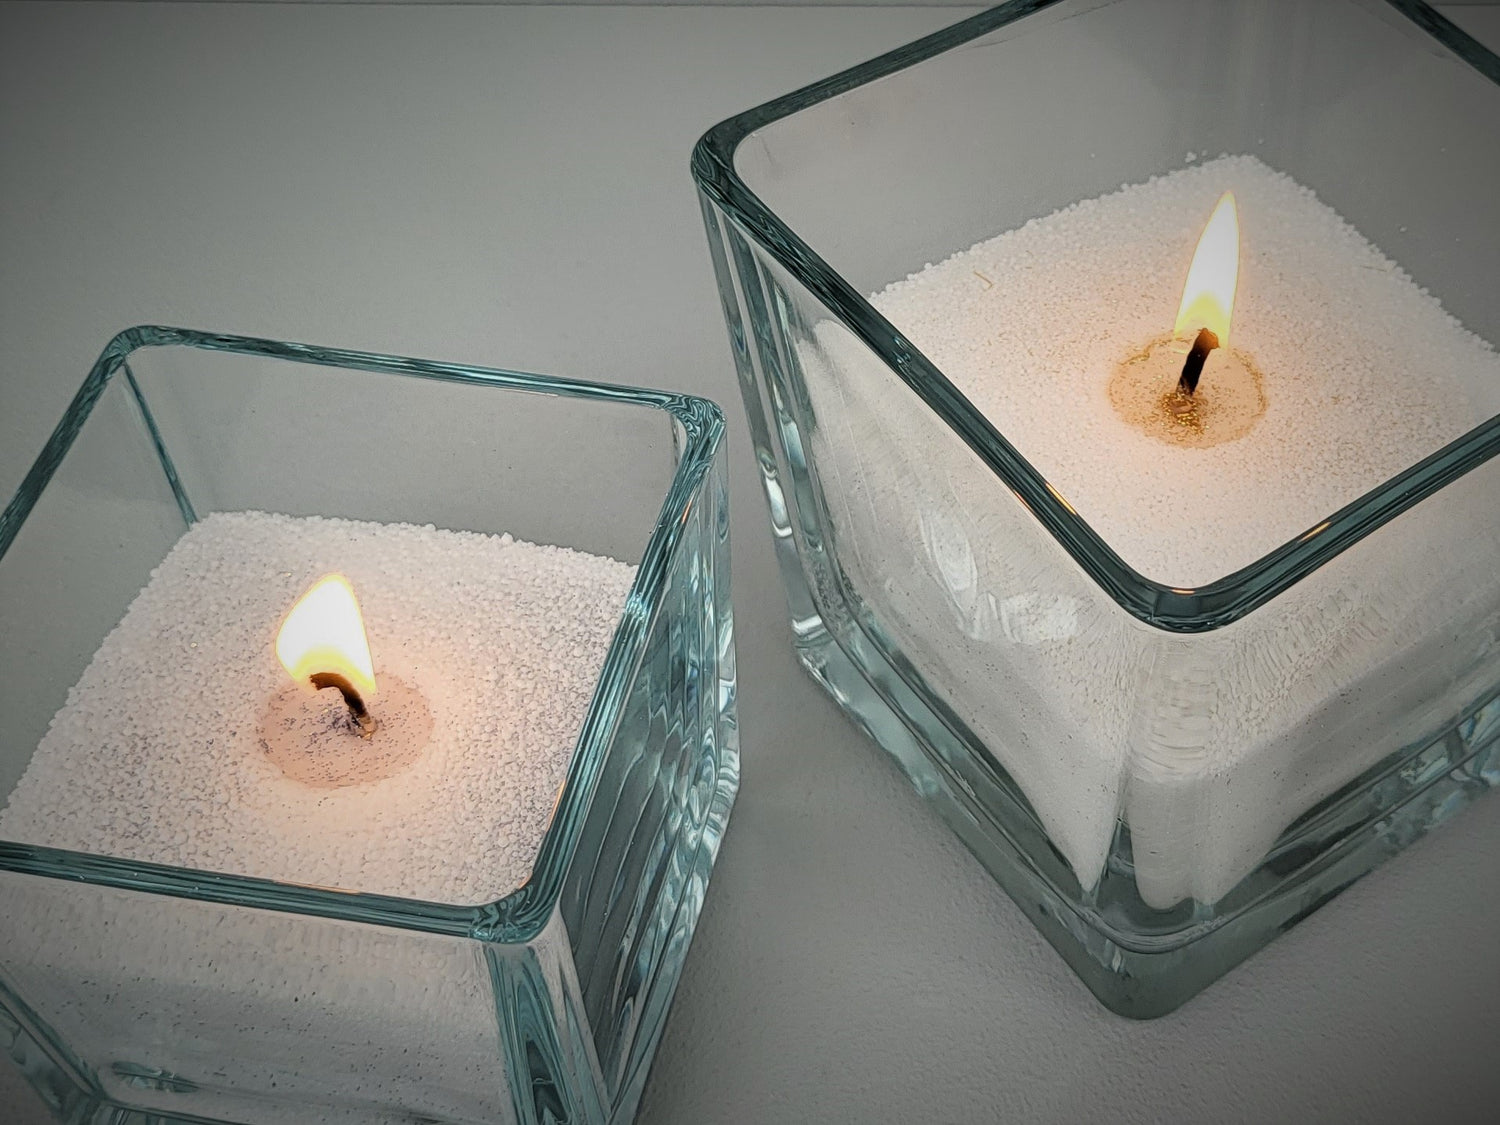 weißer Kerzensand, angereichert mit Gold oder Silber Schimmer